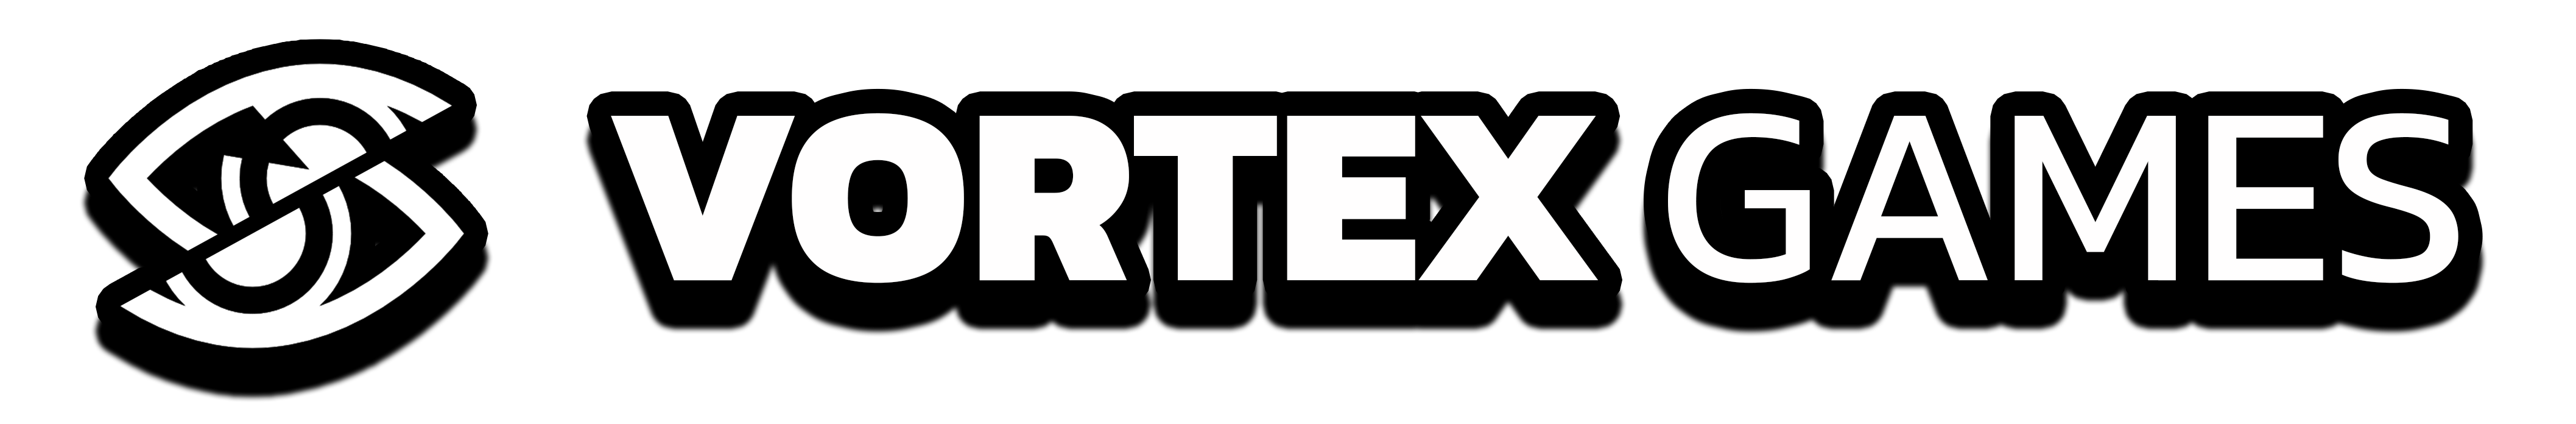 Vortex Games